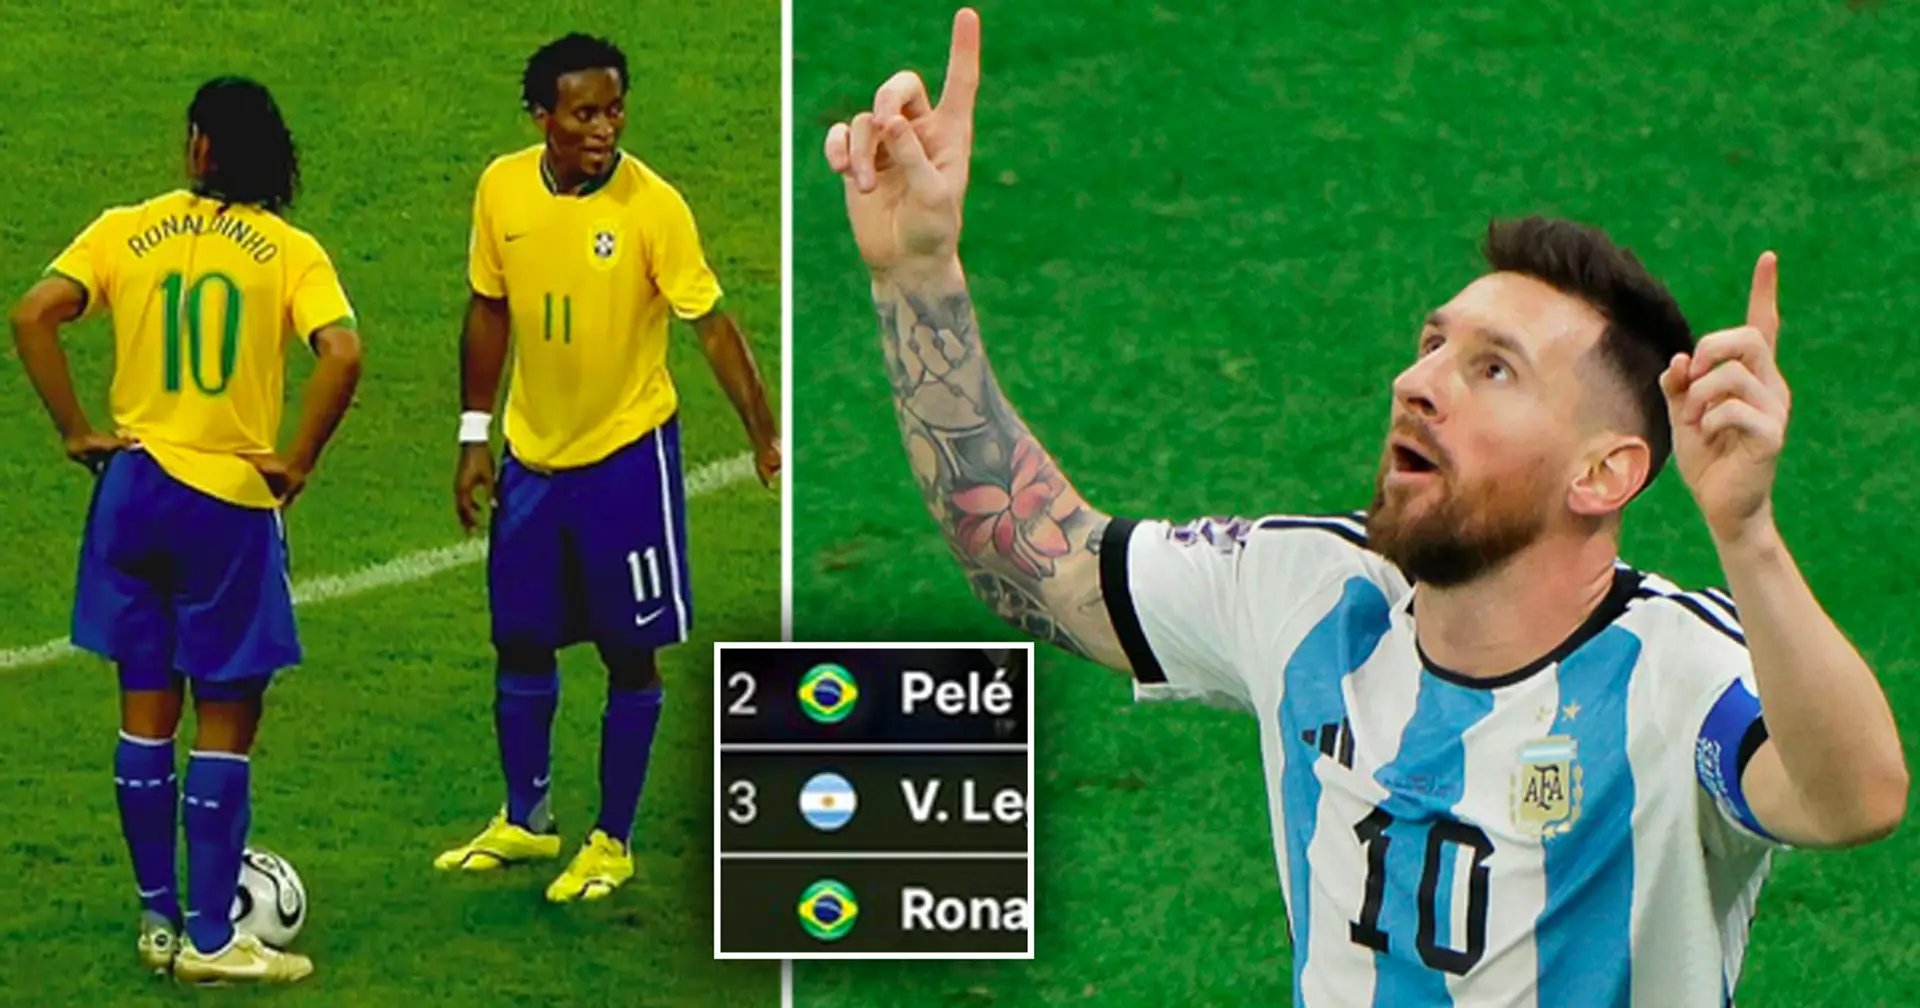 6 joueurs avec le plus de buts sur coup franc de l'histoire : Messi derrière Ronaldinho